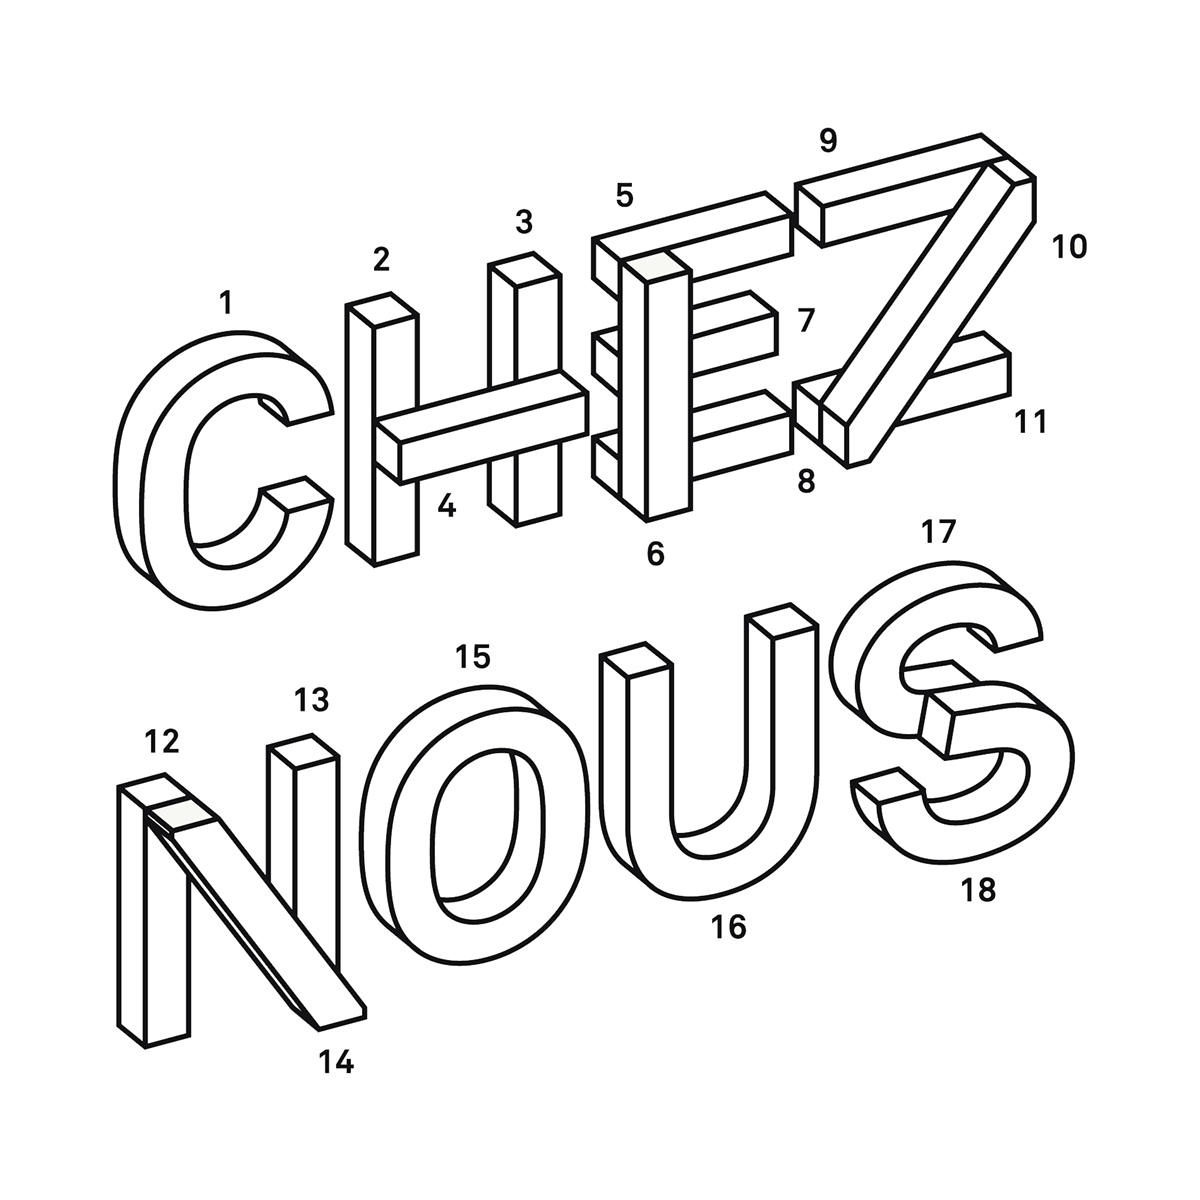 Chez Nous book cover outline 3D alphabet letters